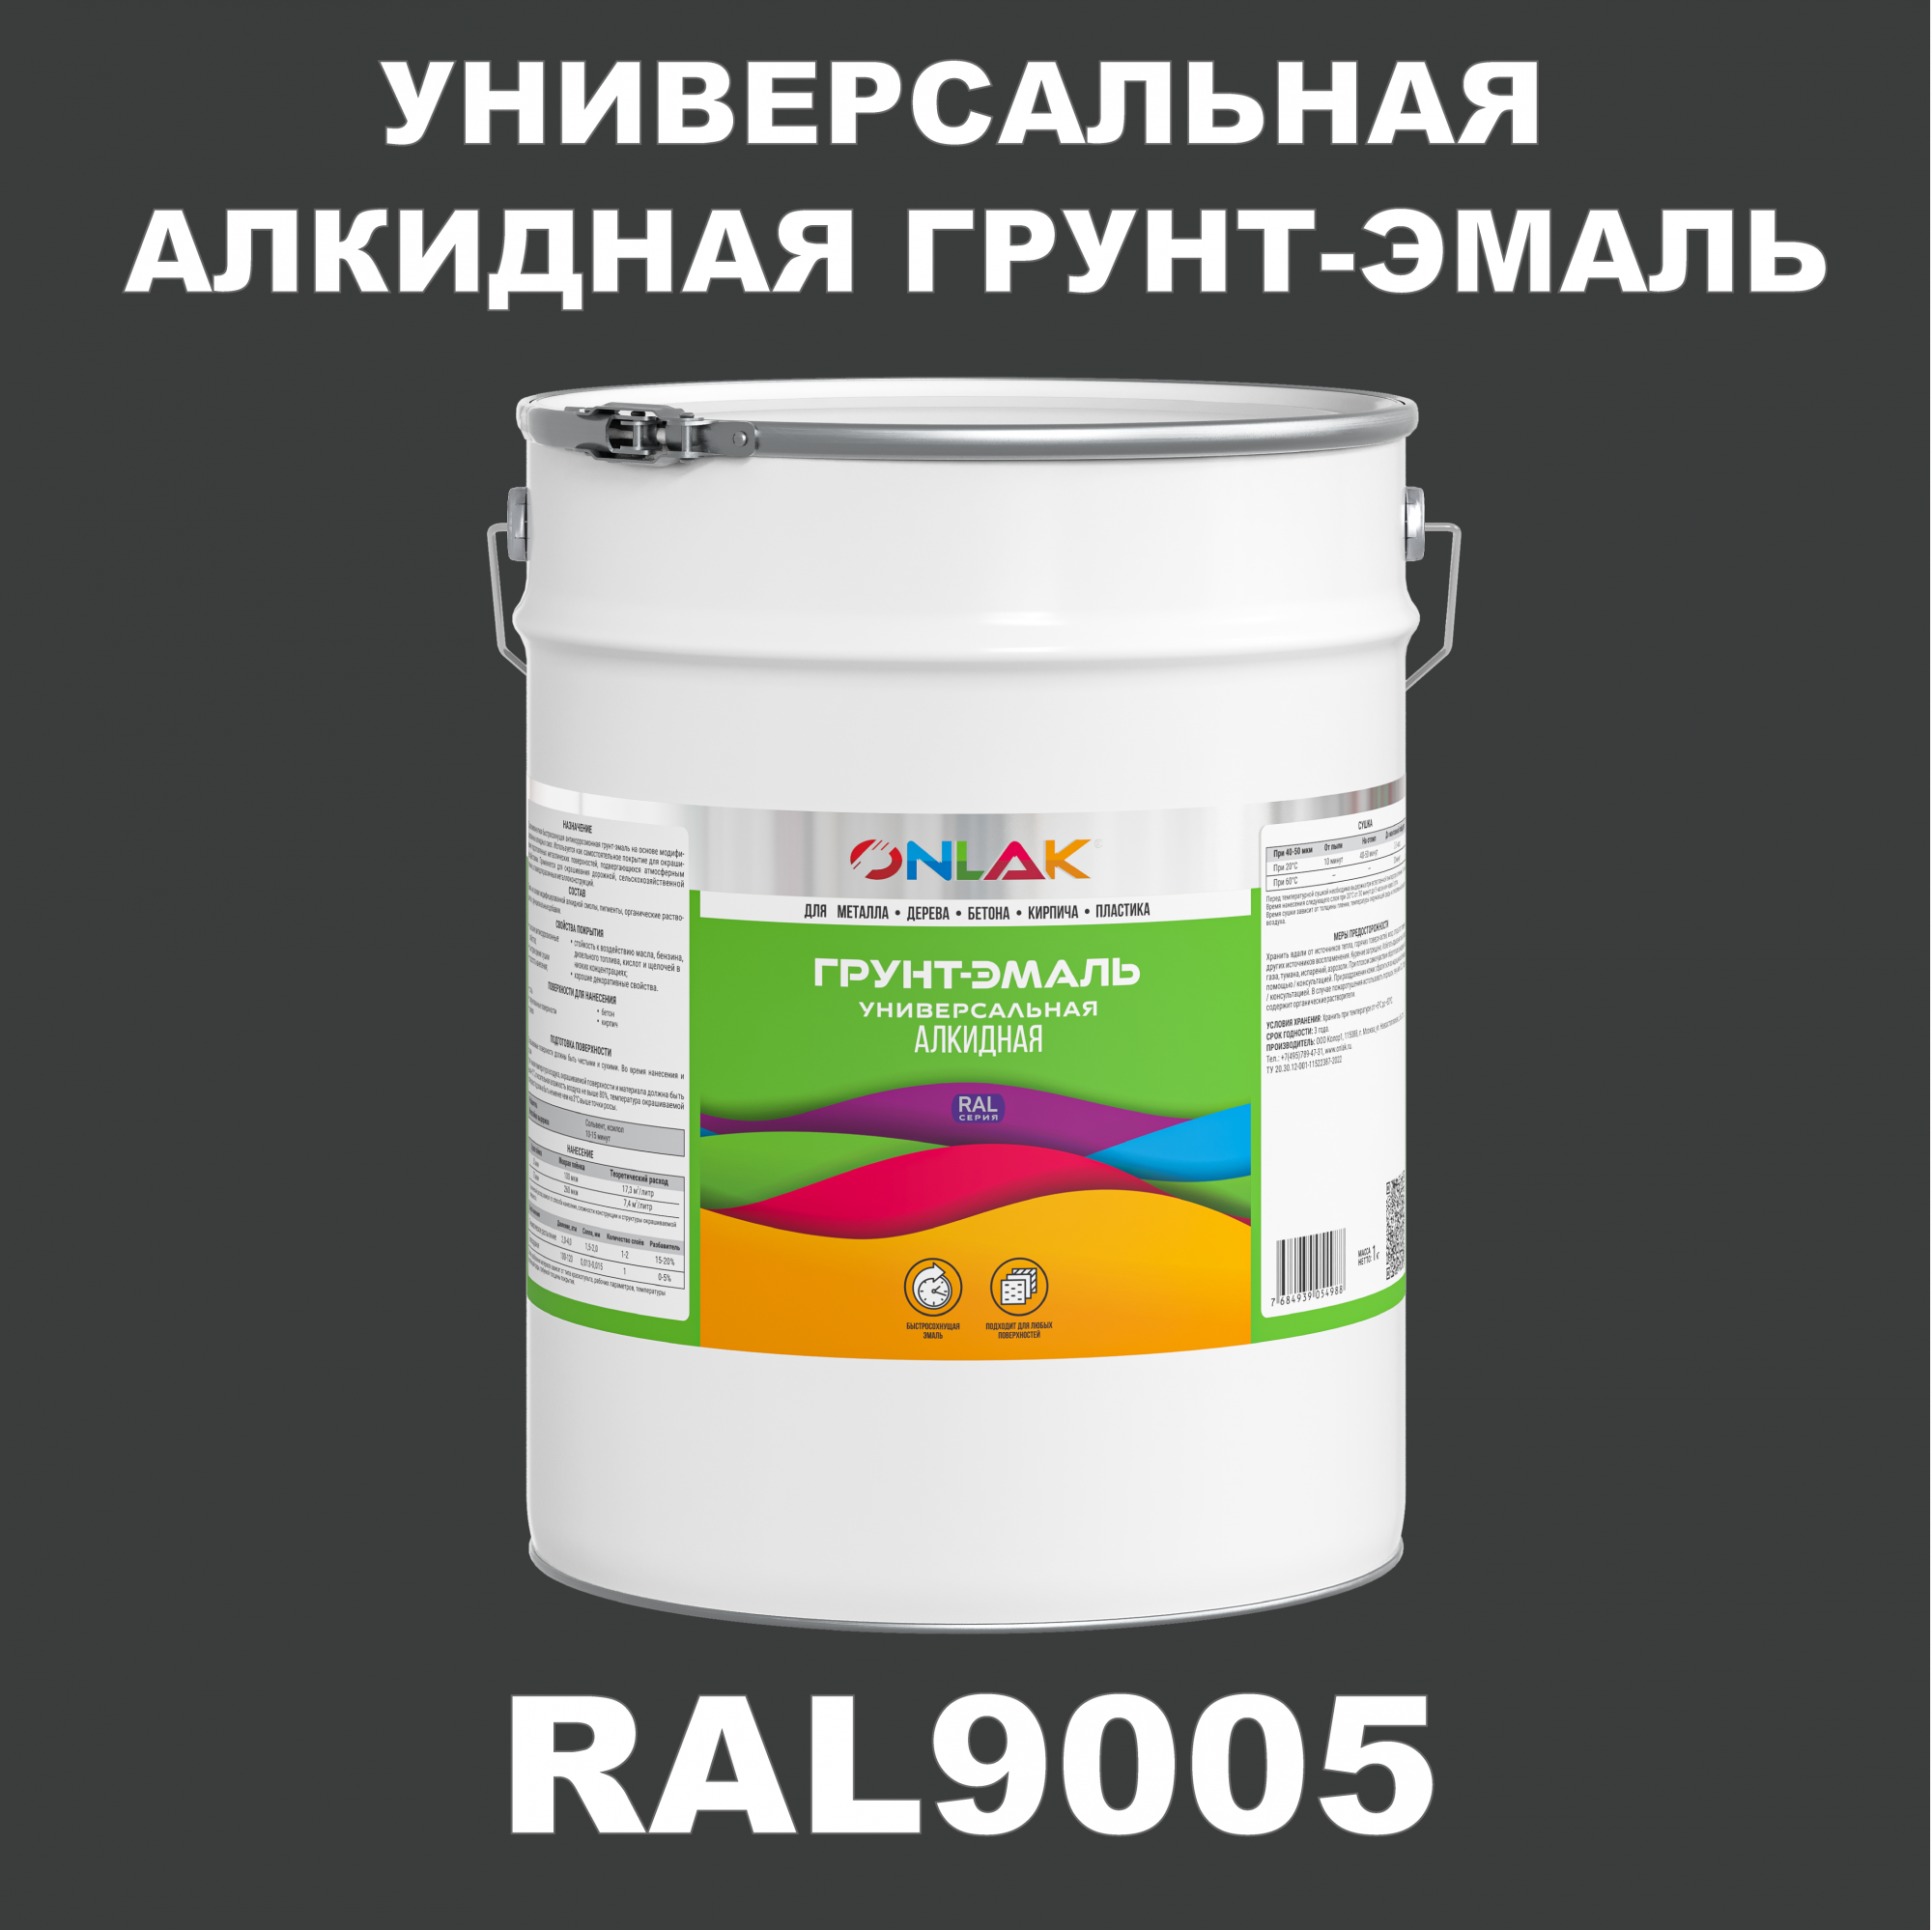 Грунт-эмаль ONLAK 1К RAL9005 антикоррозионная алкидная по металлу по ржавчине 20 кг грунт эмаль аэрозольная престиж 3в1 алкидная коричневая ral 8017 425 мл 0 425 кг